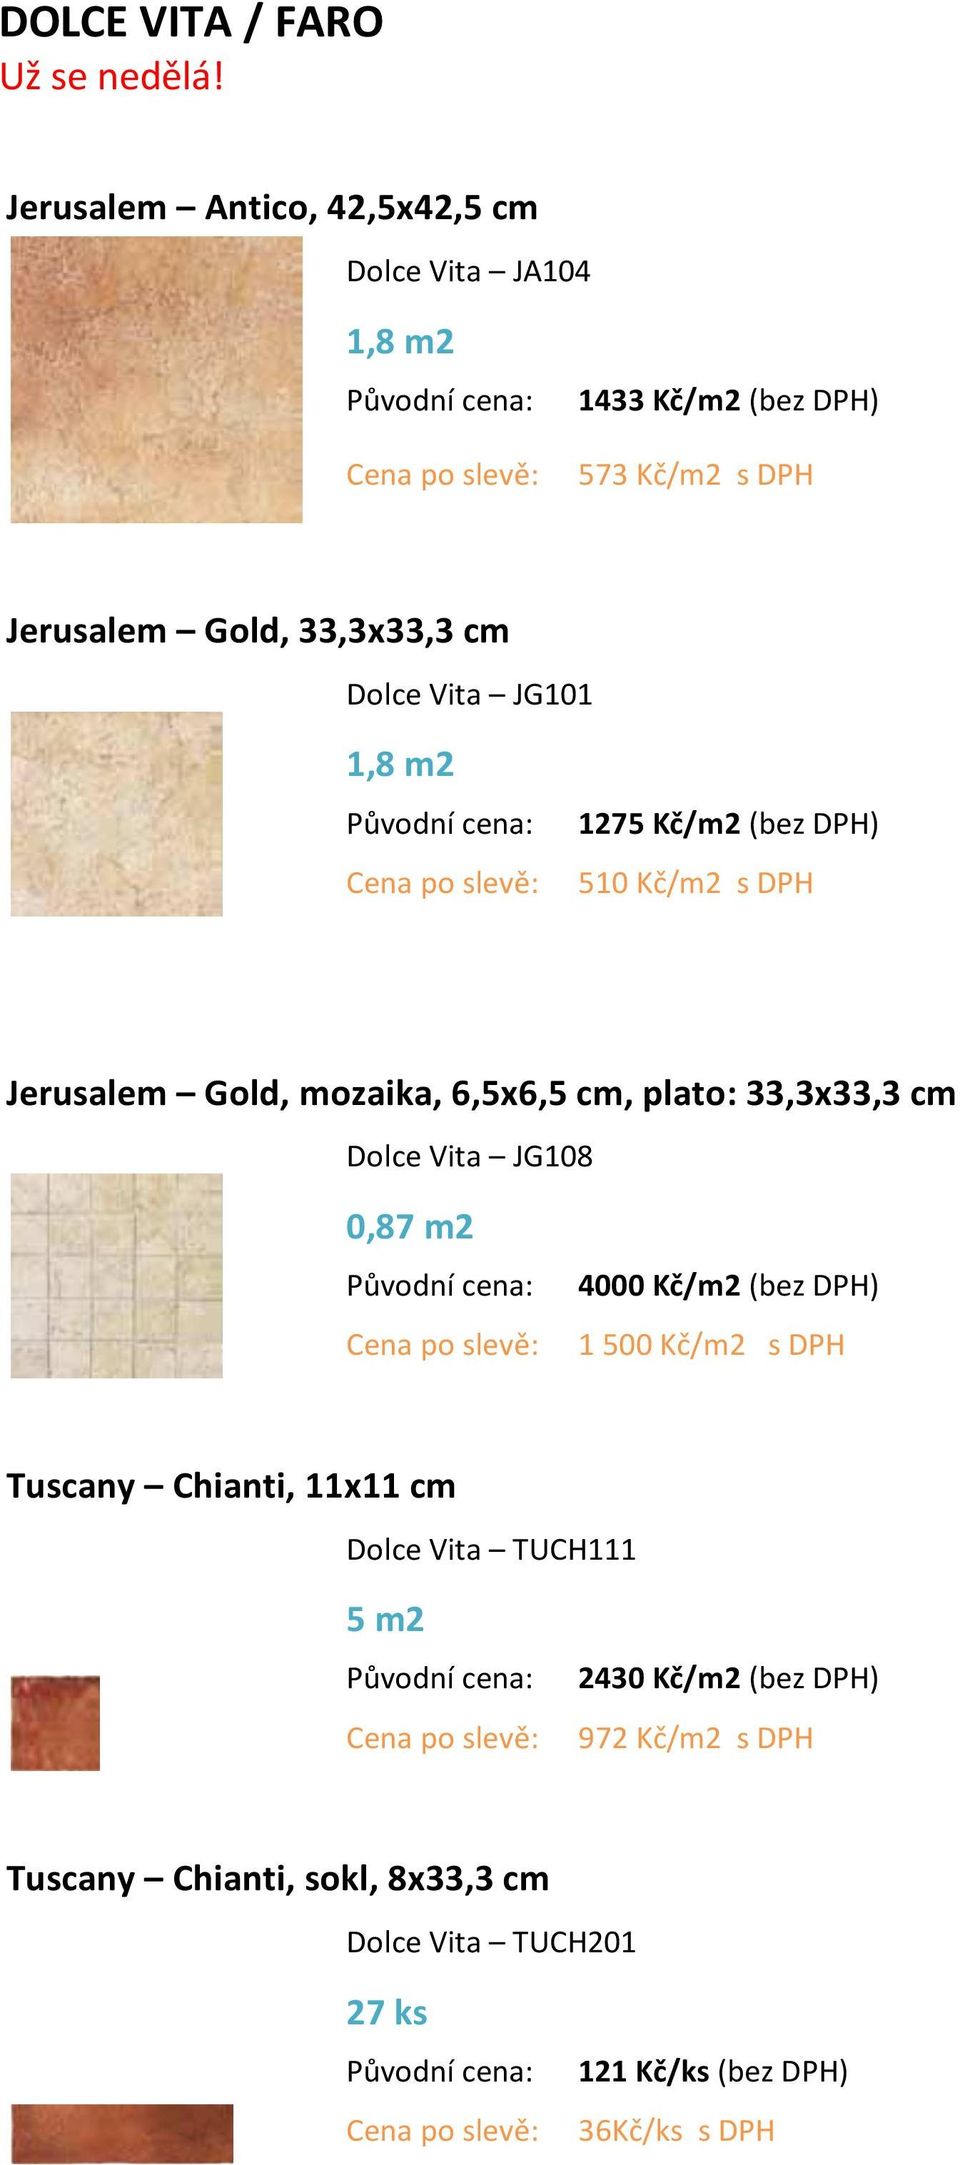 Vita JG101 1,8 m2 1275 Kč/m2 (bez DPH) 510 Kč/m2 s DPH Jerusalem Gold, mozaika, 6,5x6,5 cm, plato: 33,3x33,3 cm Dolce Vita JG108